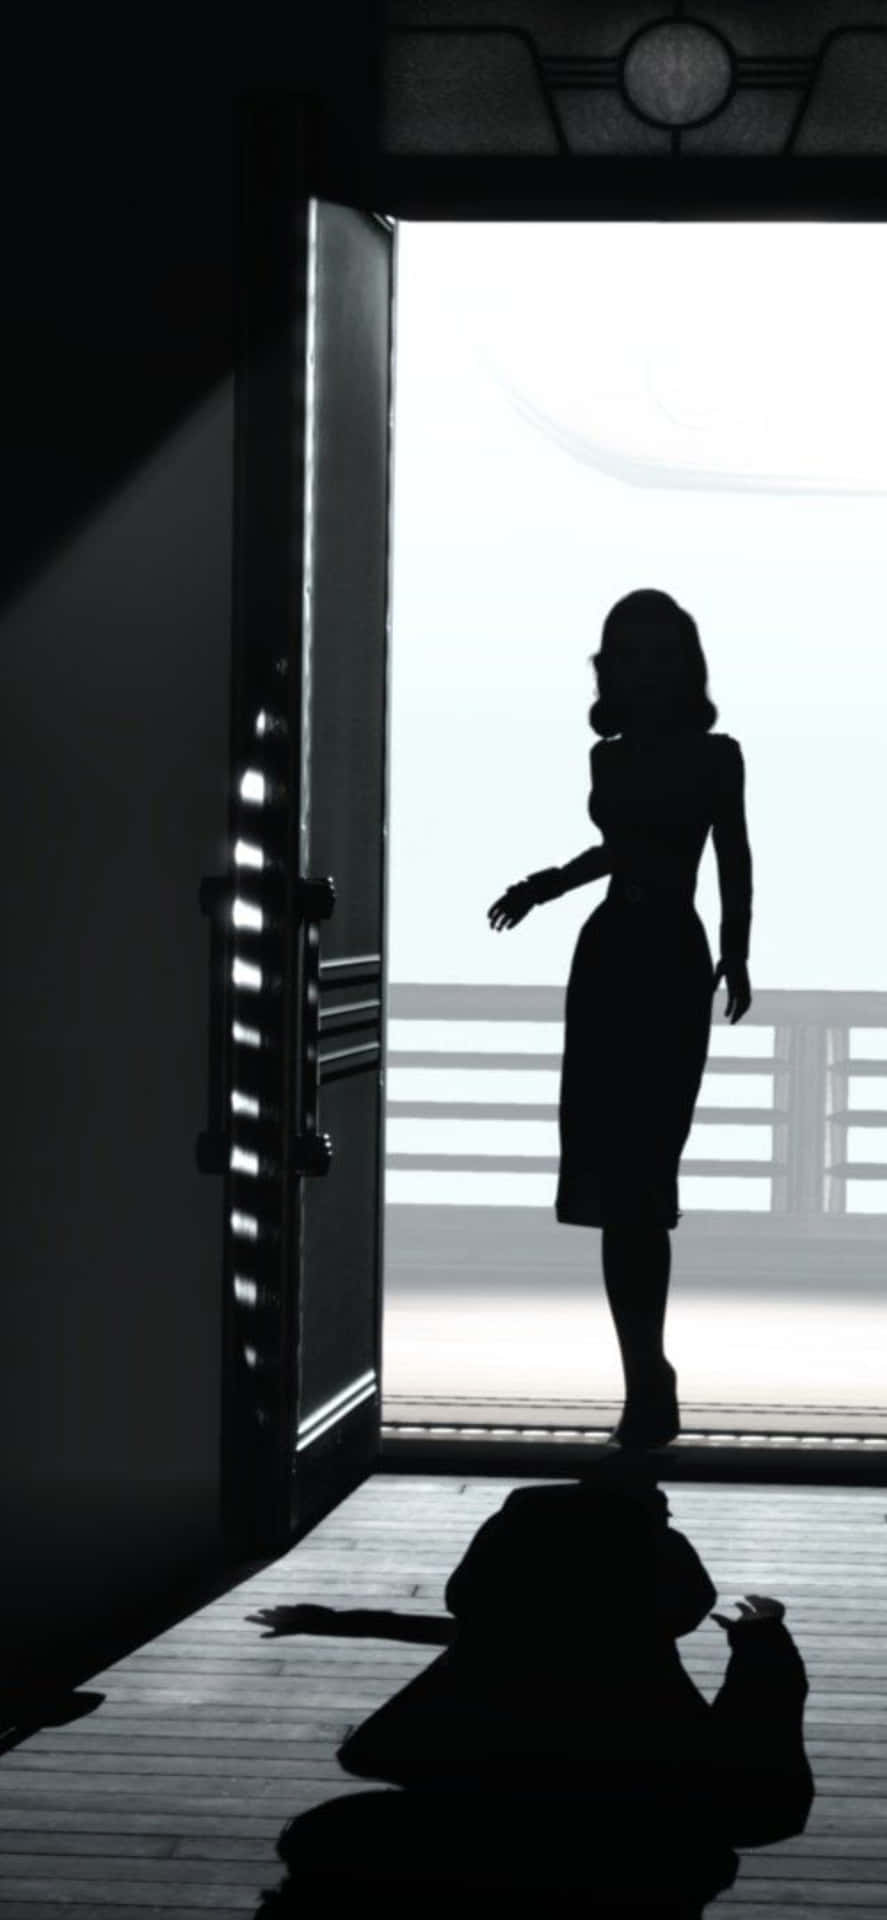 Iphone X Bioshock Infinite Background Silhouette Of Elizabeth Opening A Door